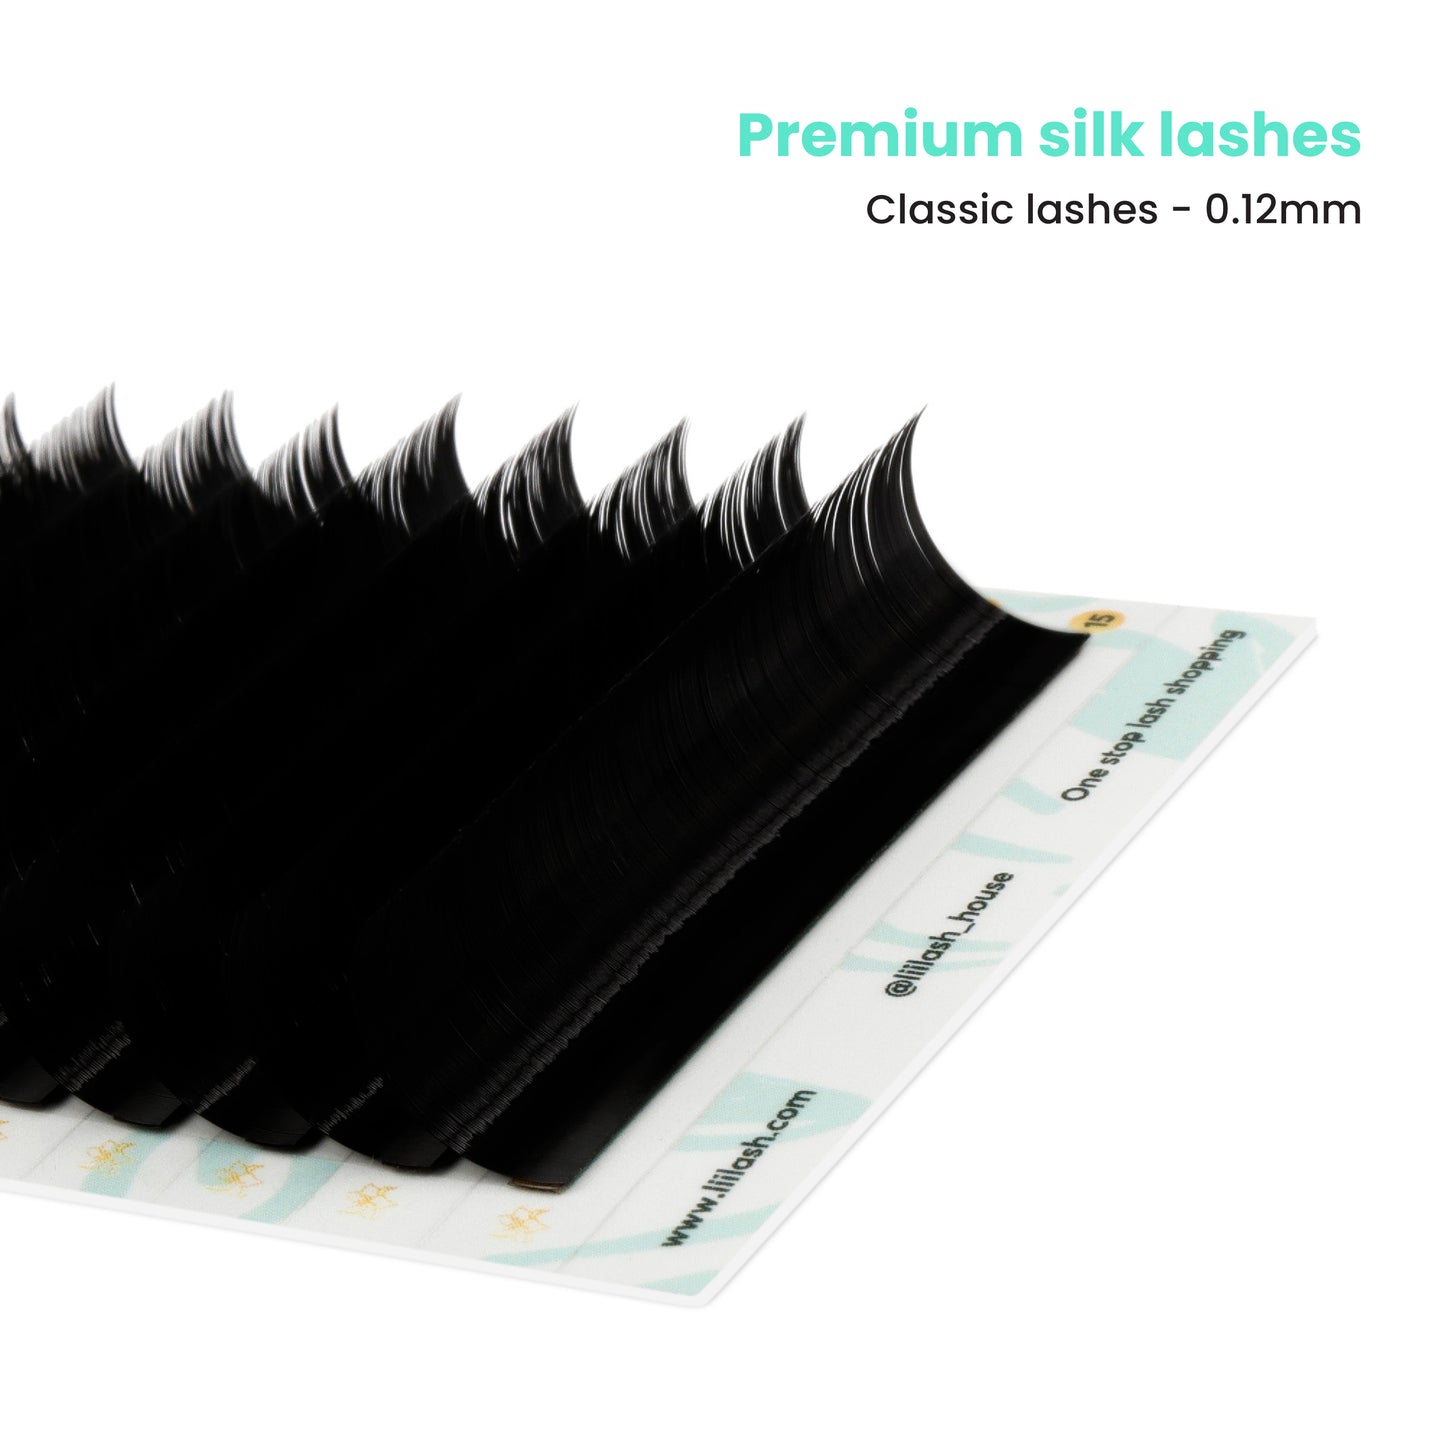 Premium Silk classic lashes 0.12mm